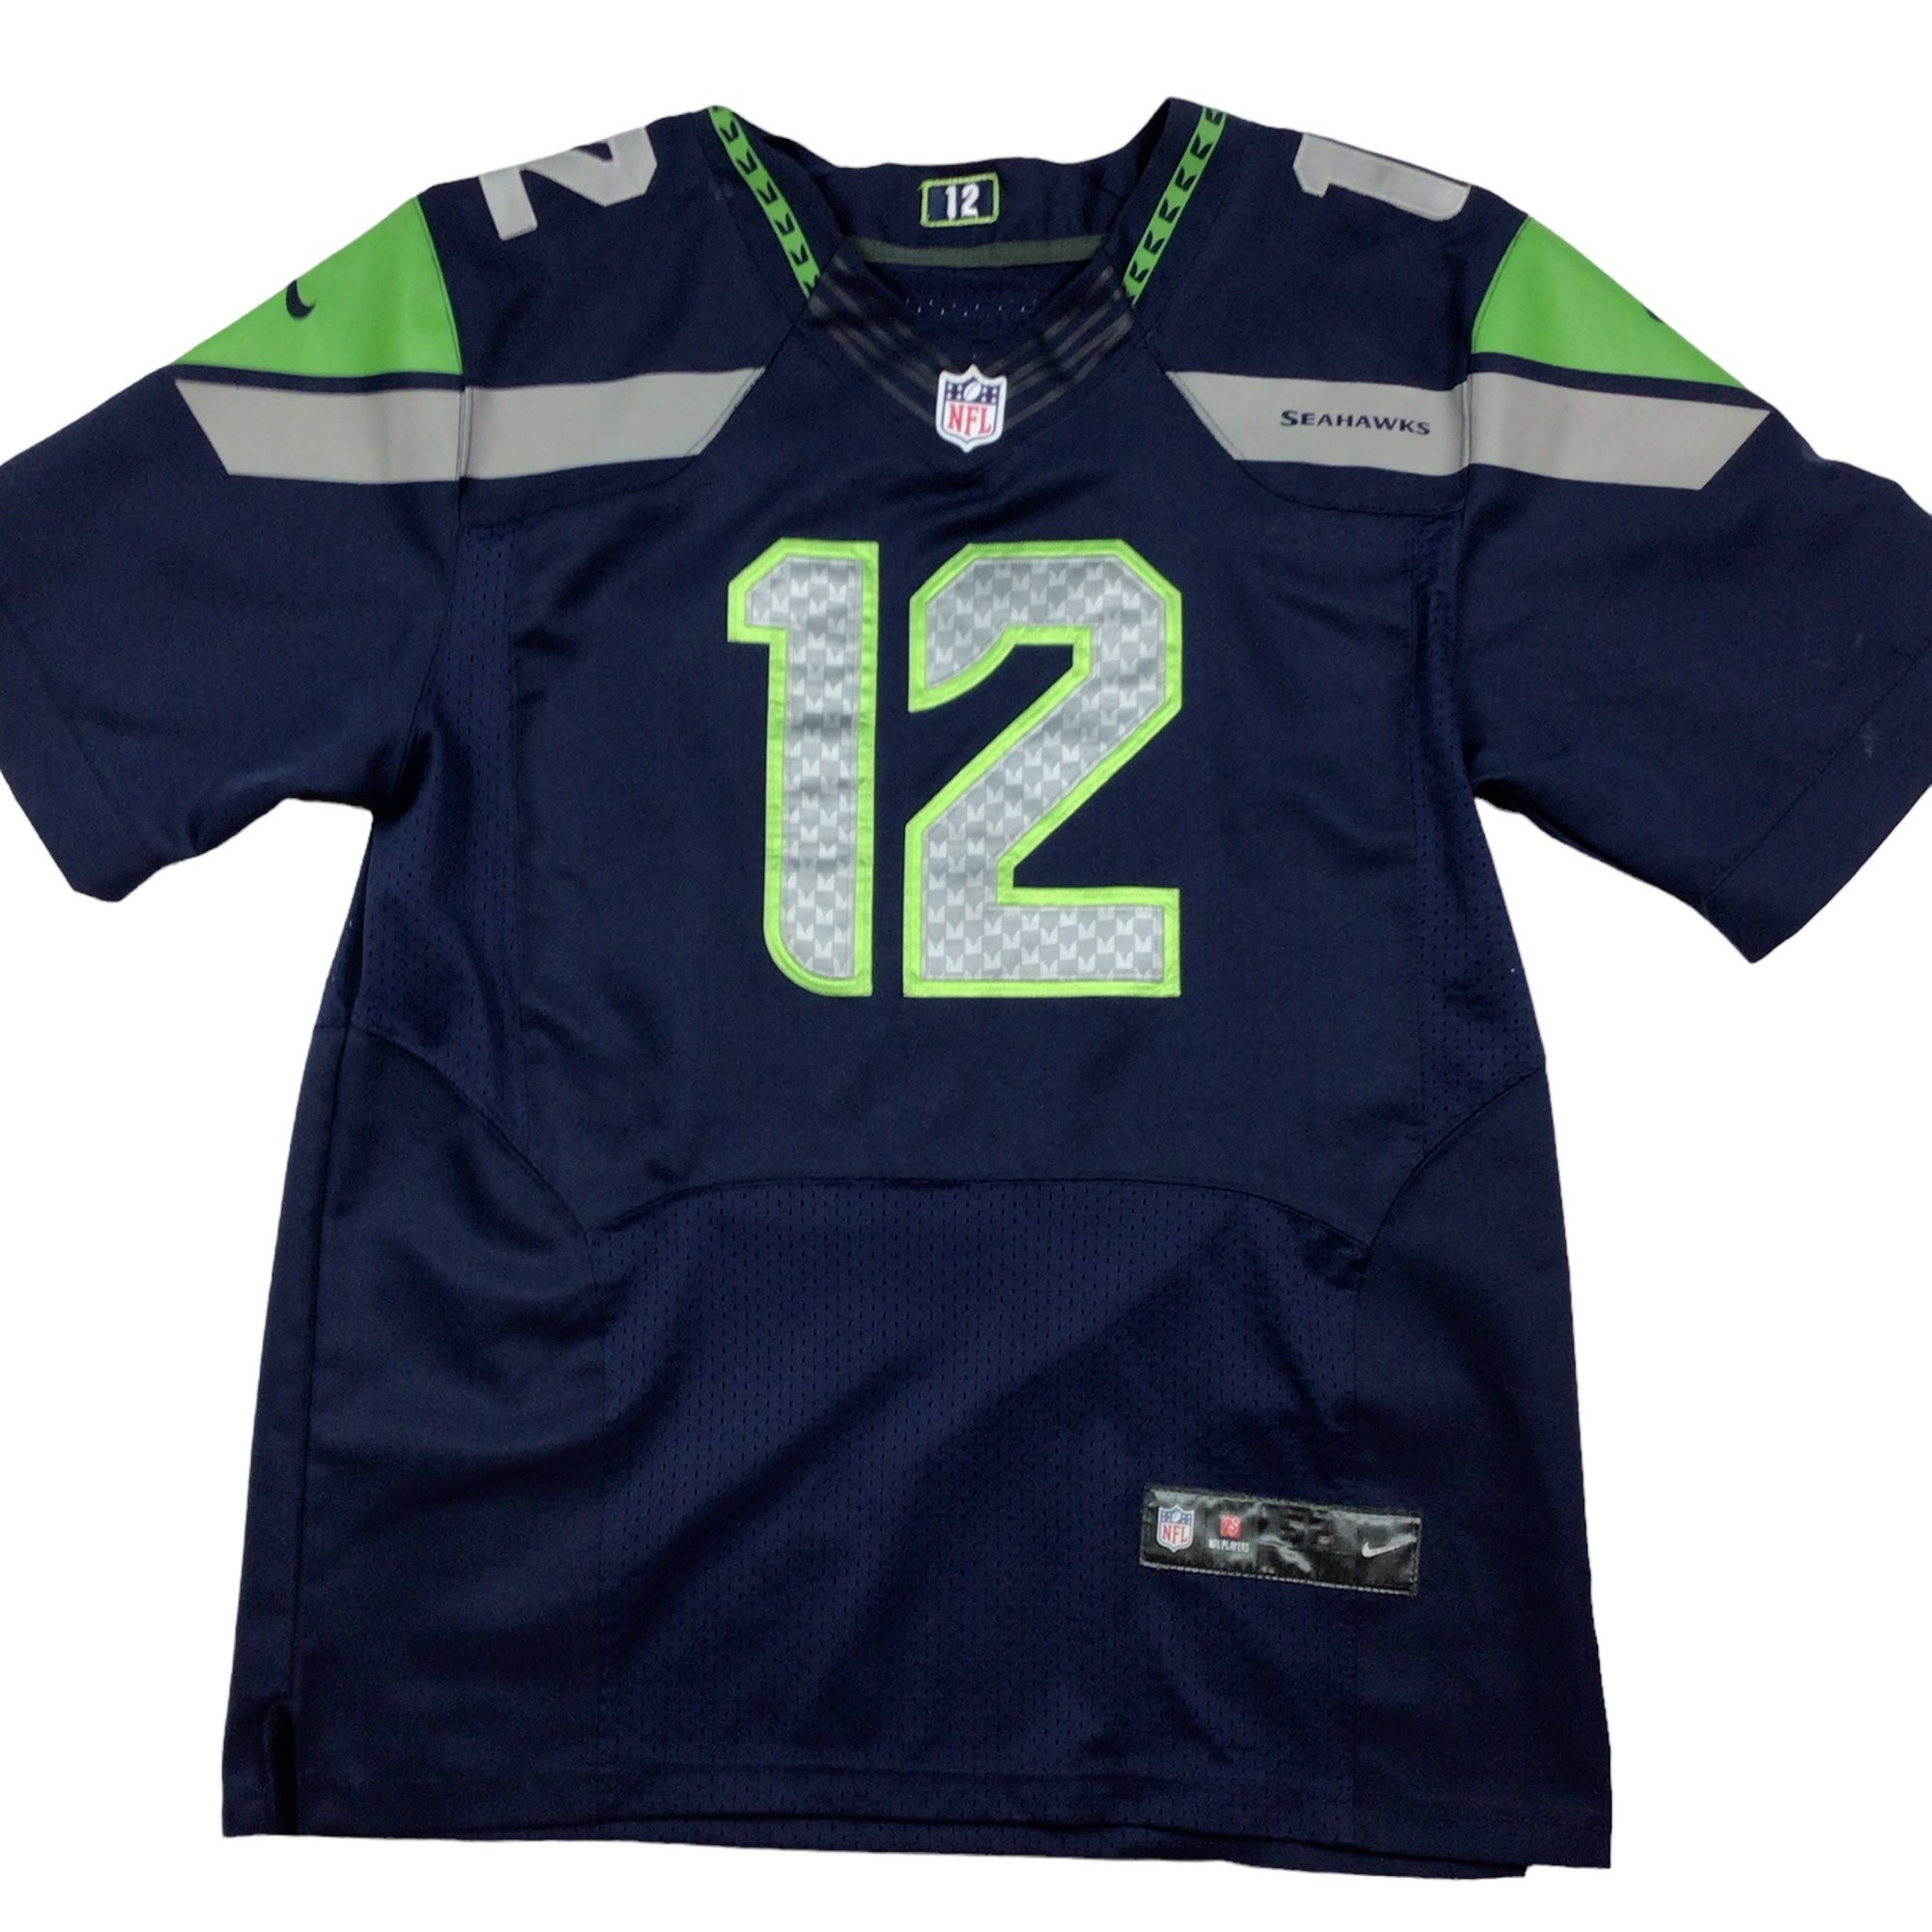 Nike Seattle Seahawks 12th man NFL jersey. 2XL